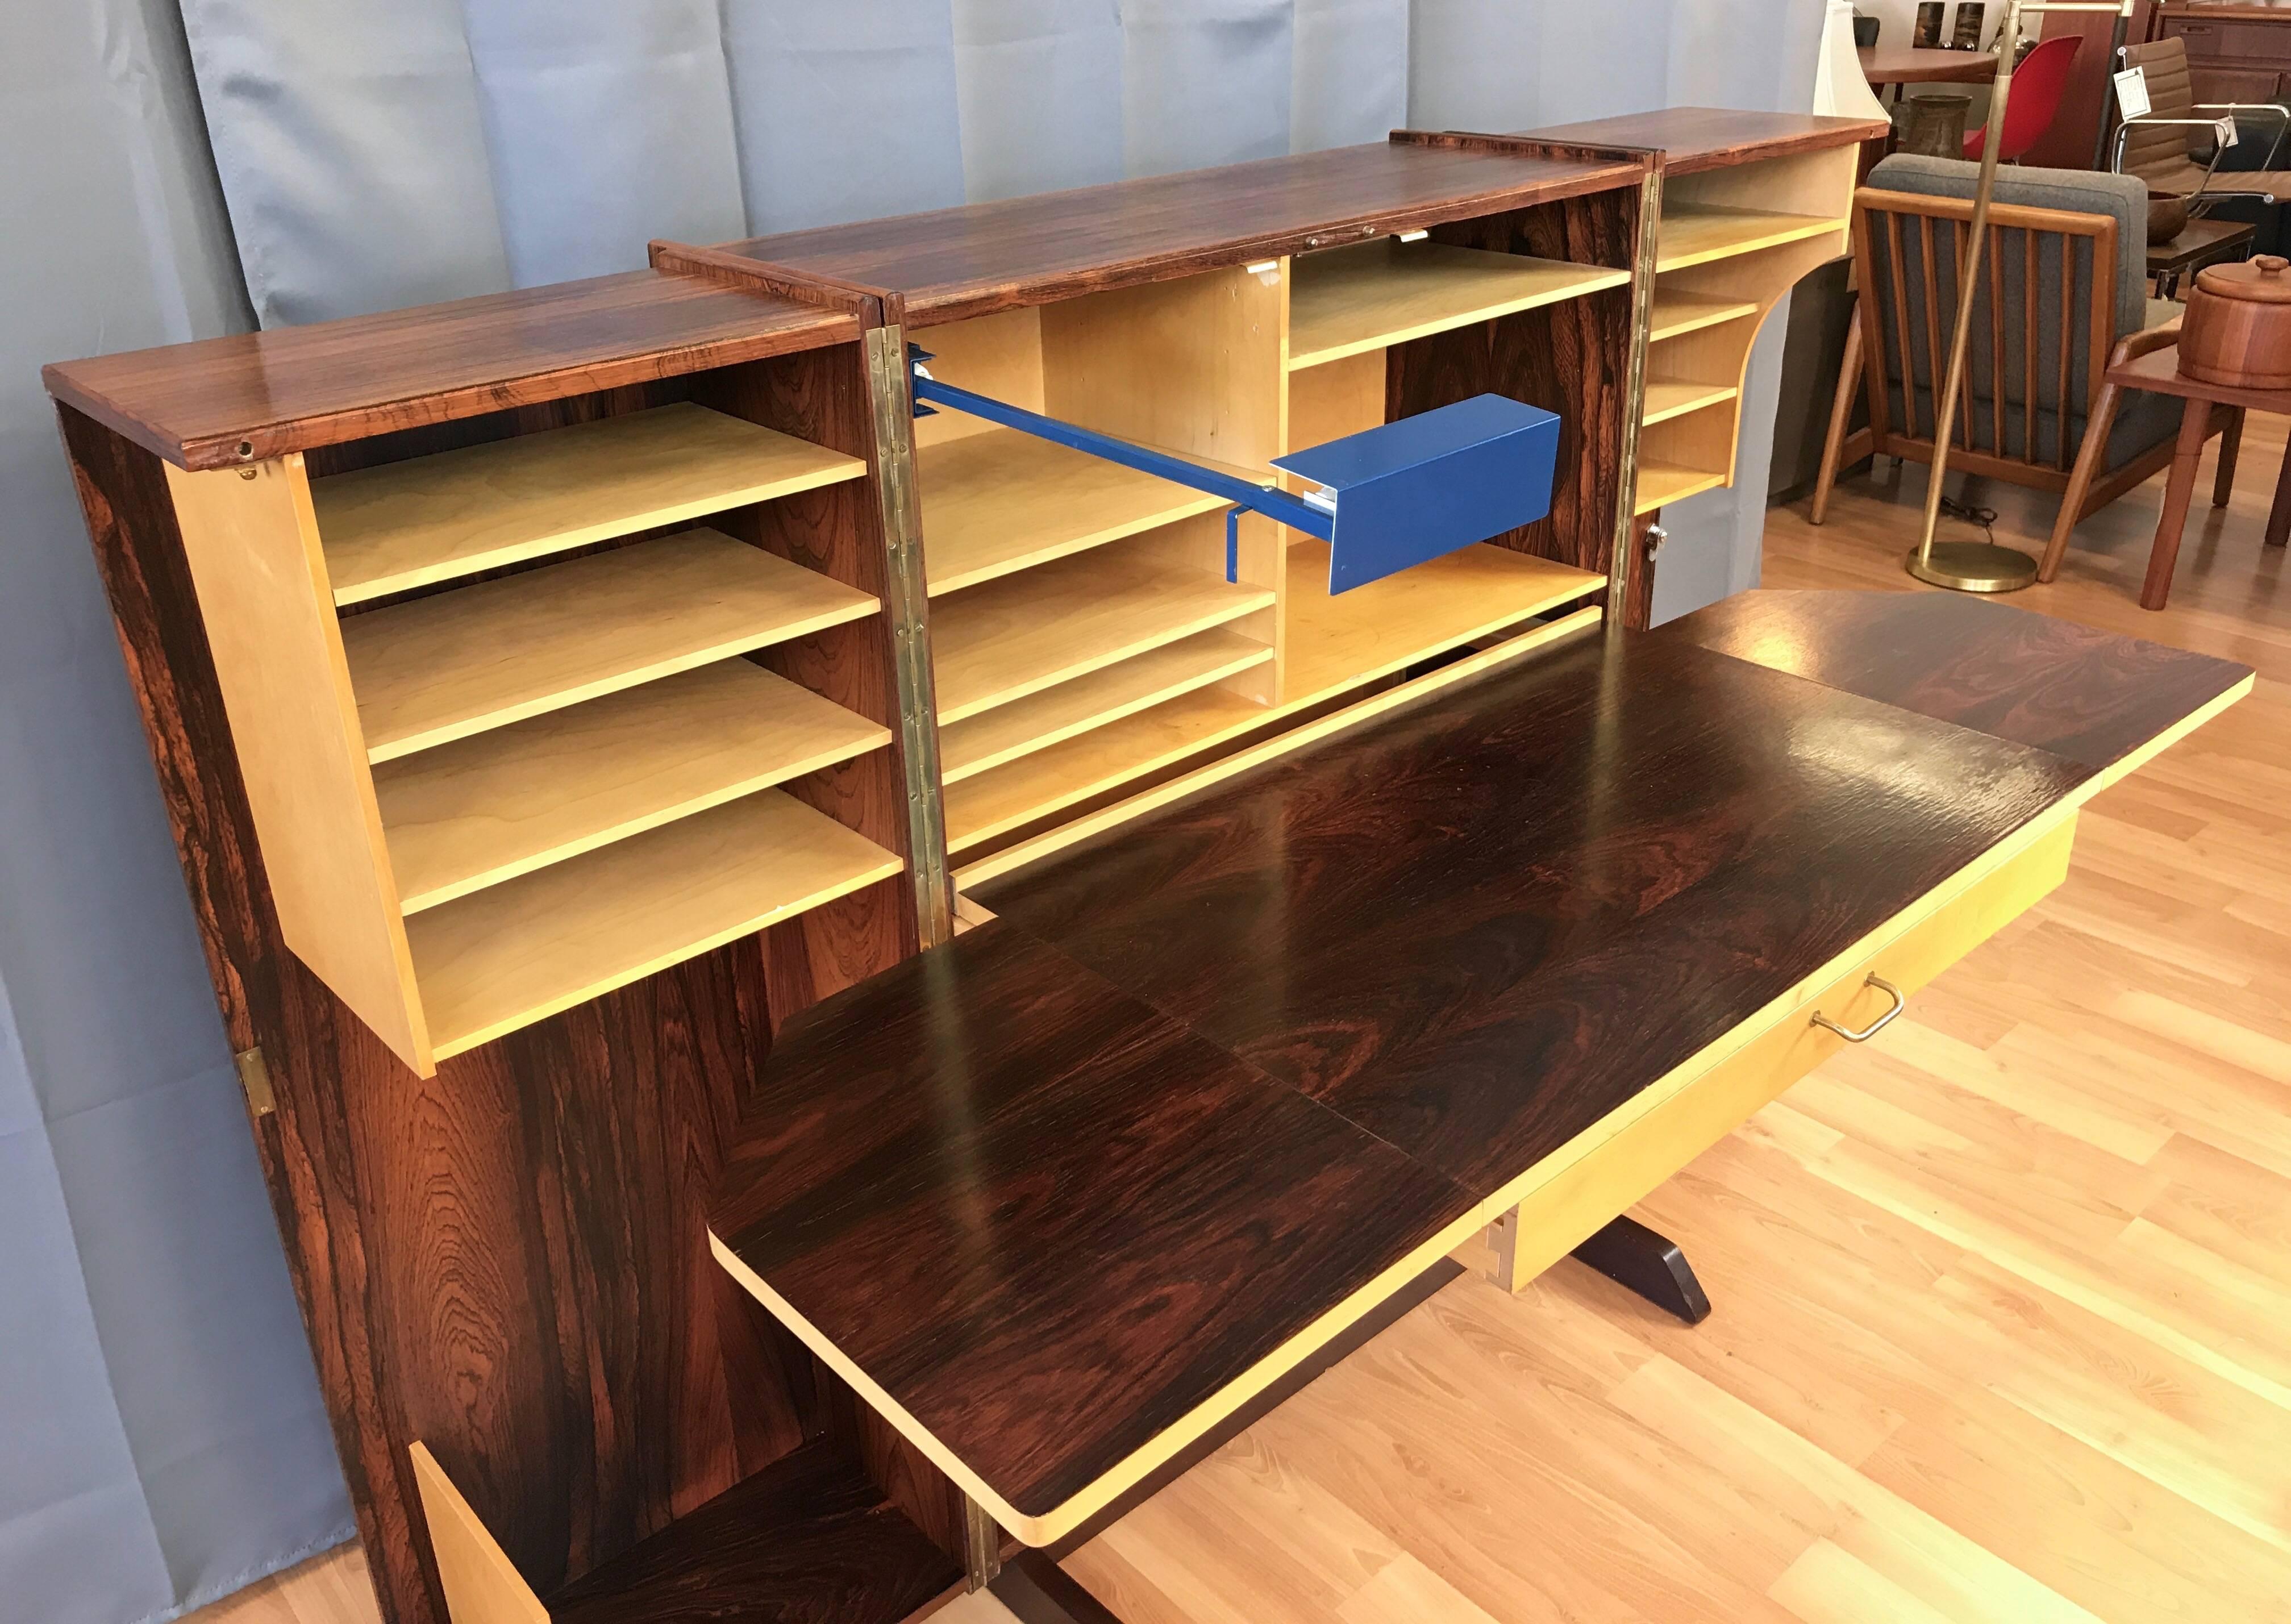 Danish Mummenthaler & Meier “Magic Box” Transforming Rosewood Desk